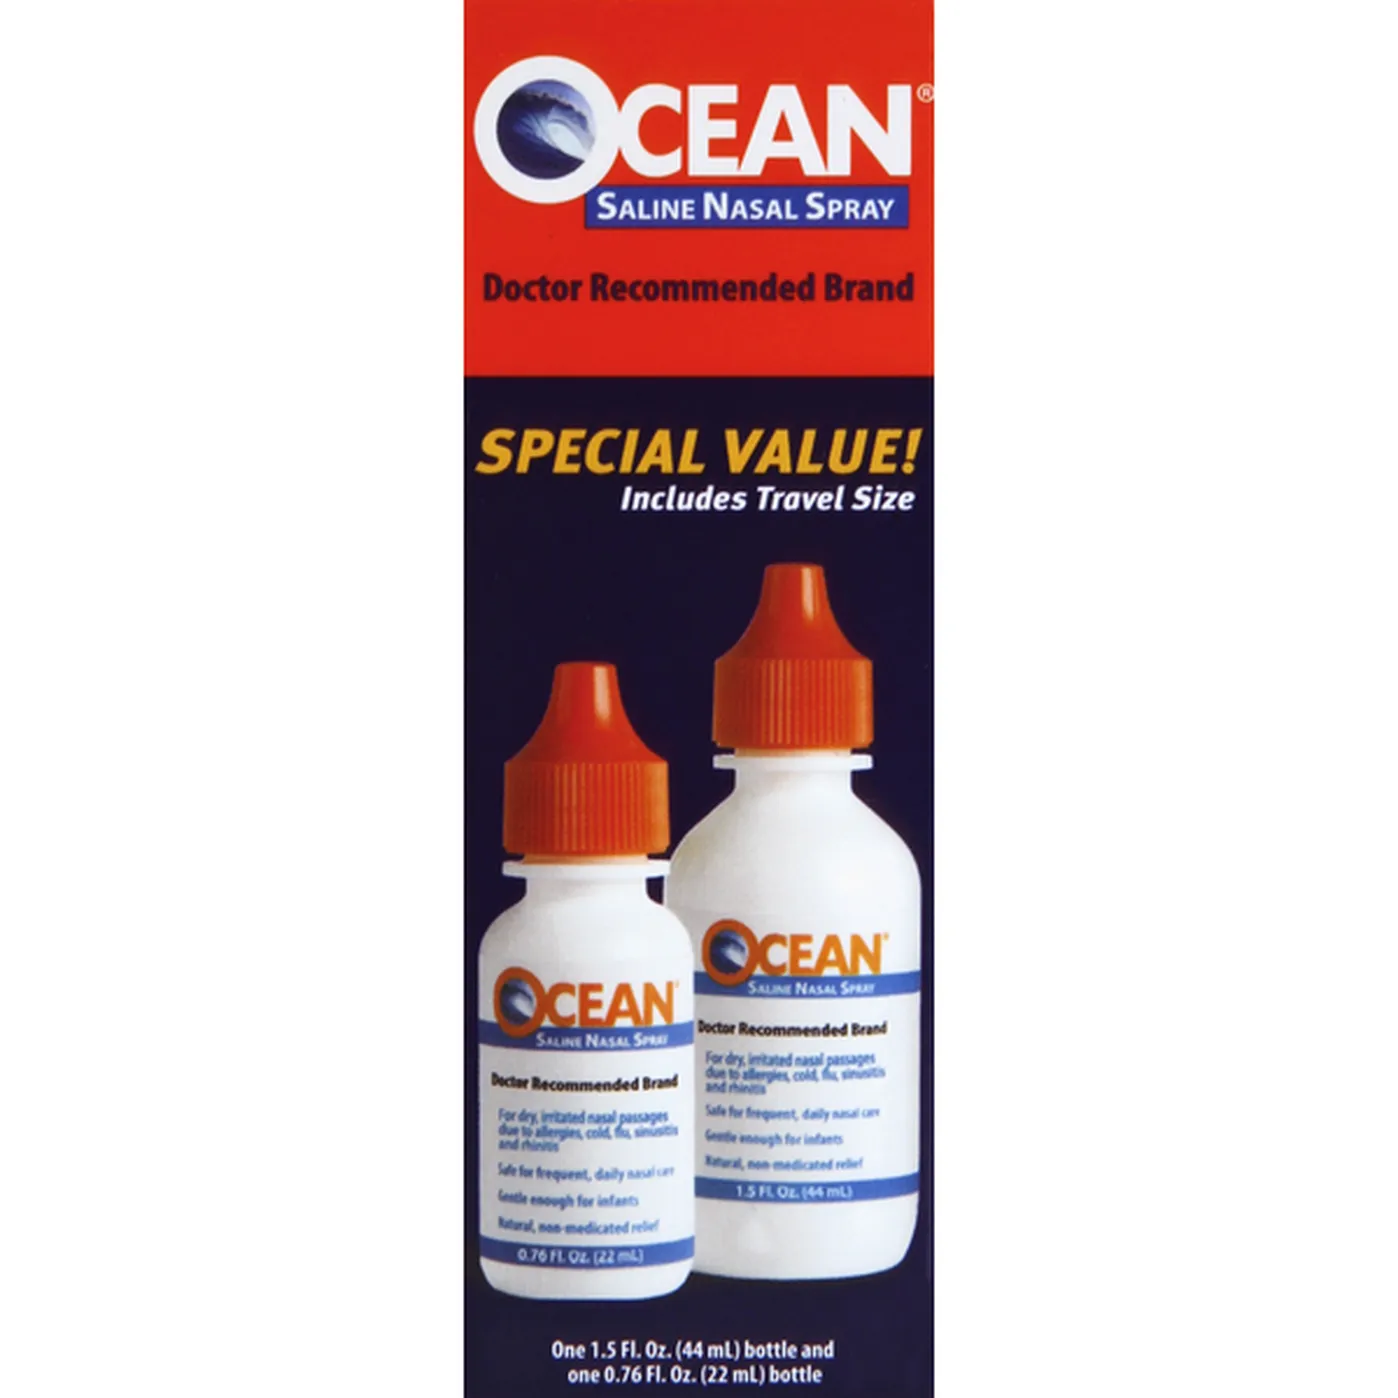 Ocean Complete Saline Nasal Spray Special Value (2 each) Delivery or